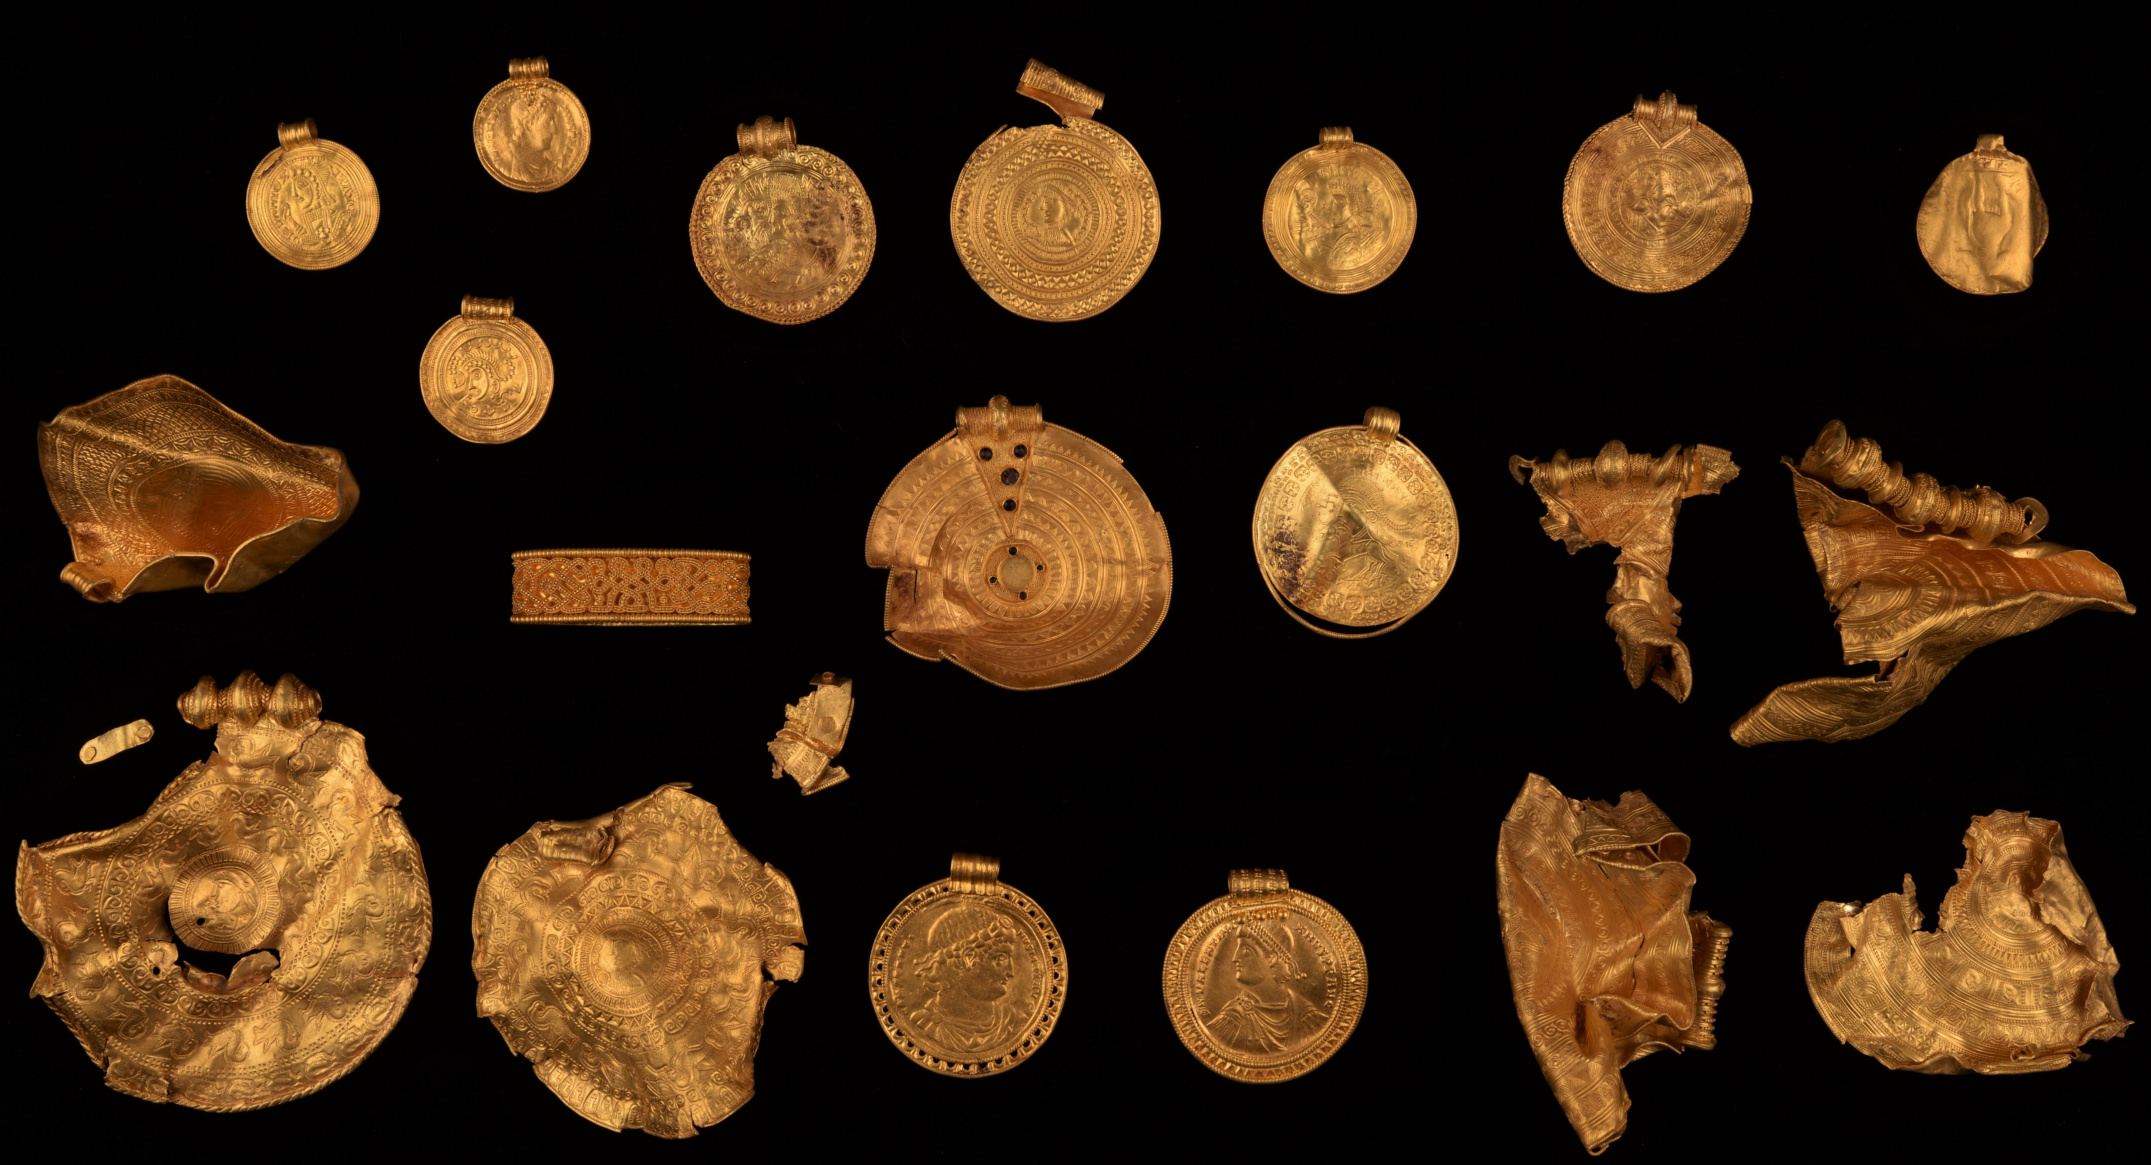 Das Brakteat war Teil eines vergrabenen Goldschatzes von Vindelev, von denen einige aus dem fünften Jahrhundert nach Christus stammen und 2021 im Osten der dänischen Region Jütland ausgegraben wurden.